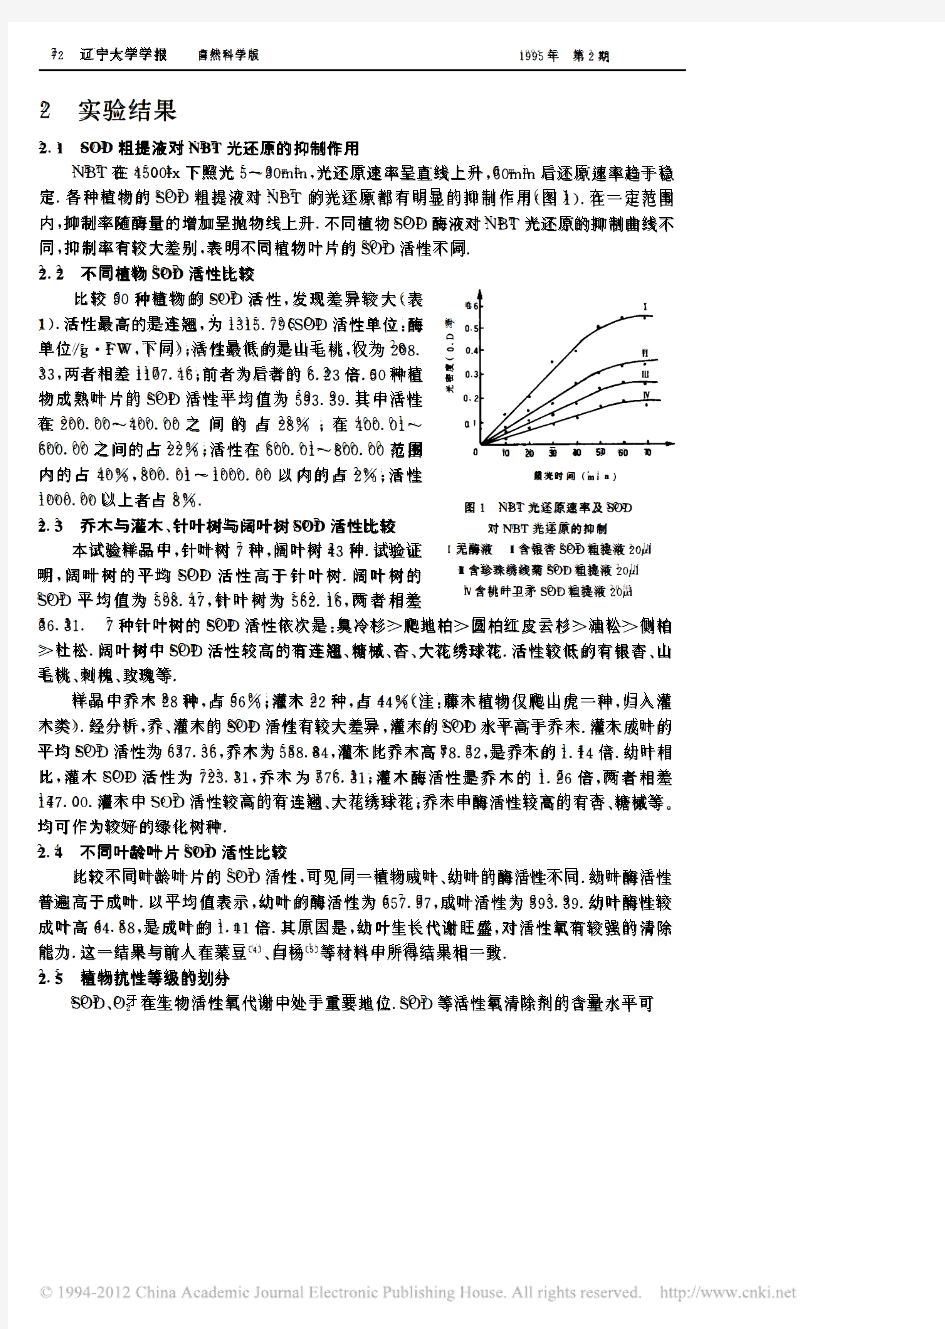 1995植物叶片SOD活性分析及植物抗性等级的划分_韩阳